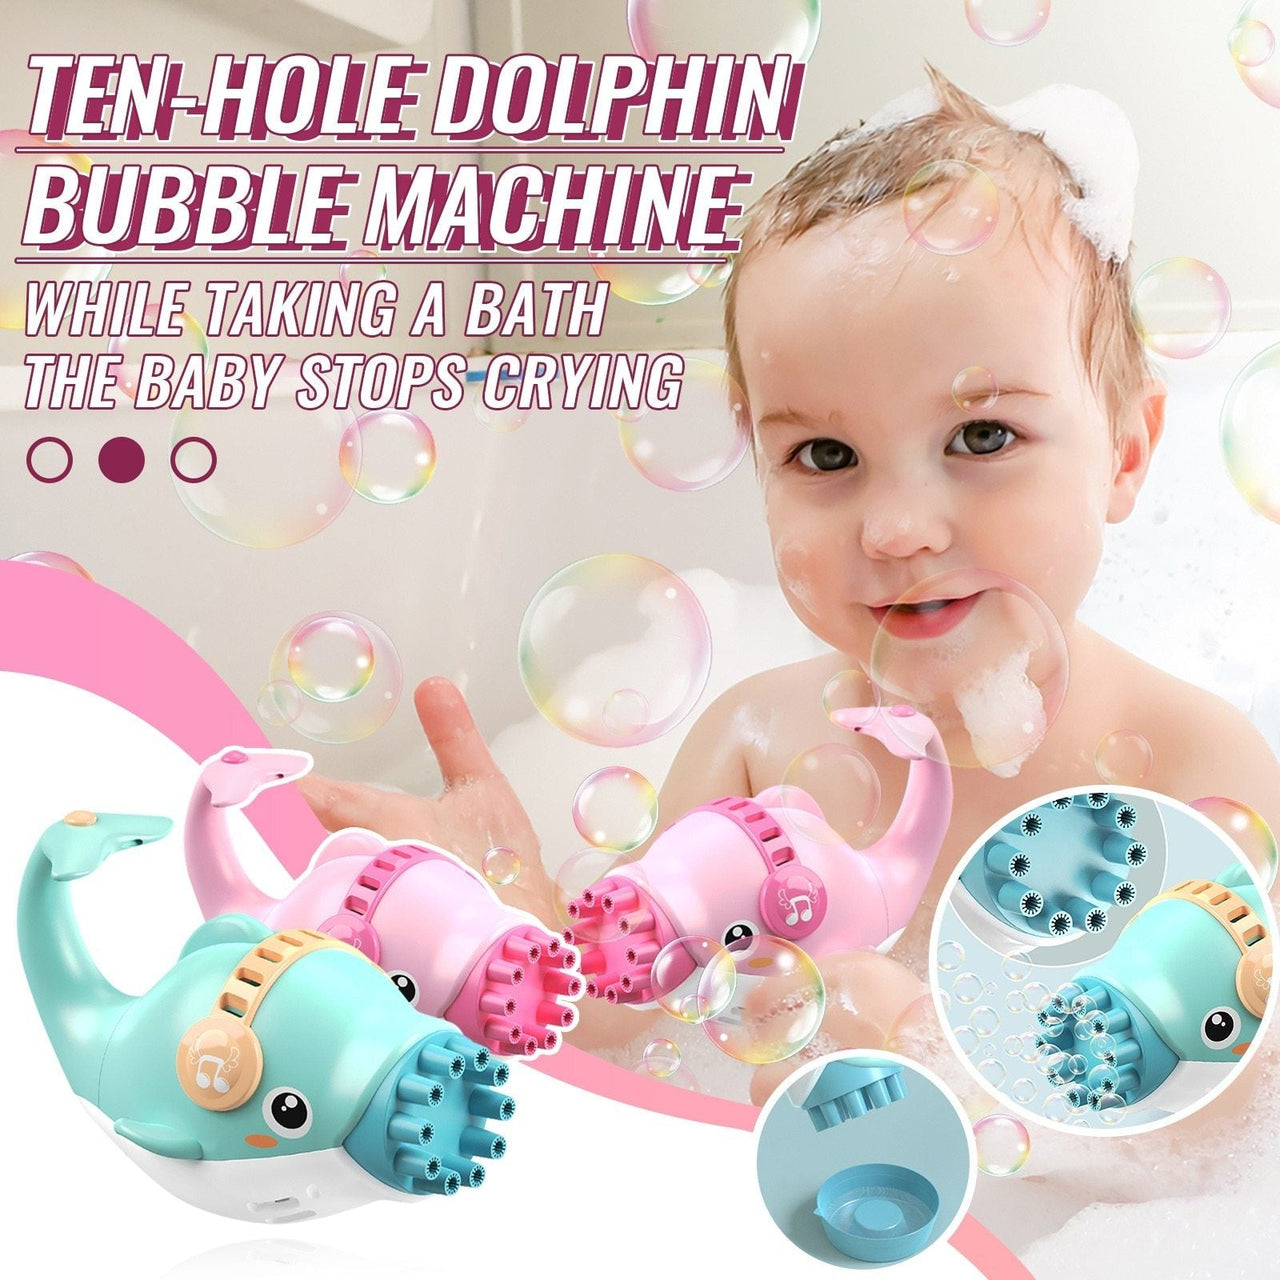 Dolphin Bubble Machine